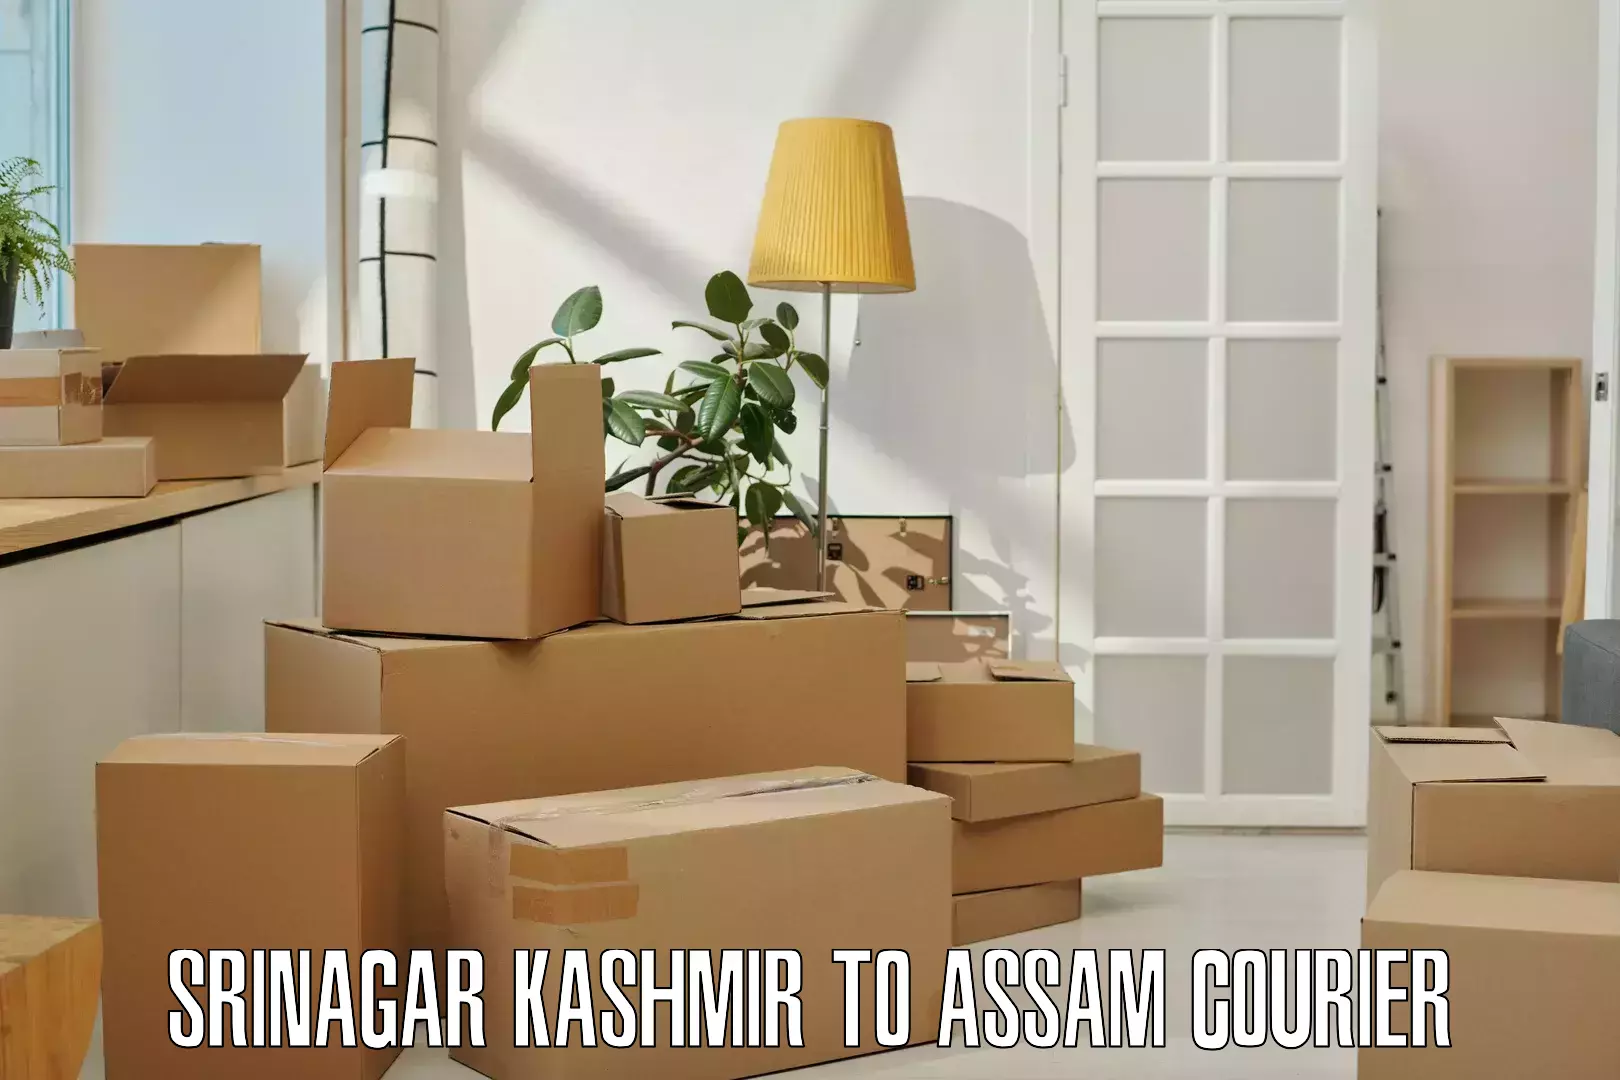 Efficient parcel service Srinagar Kashmir to Kabuganj